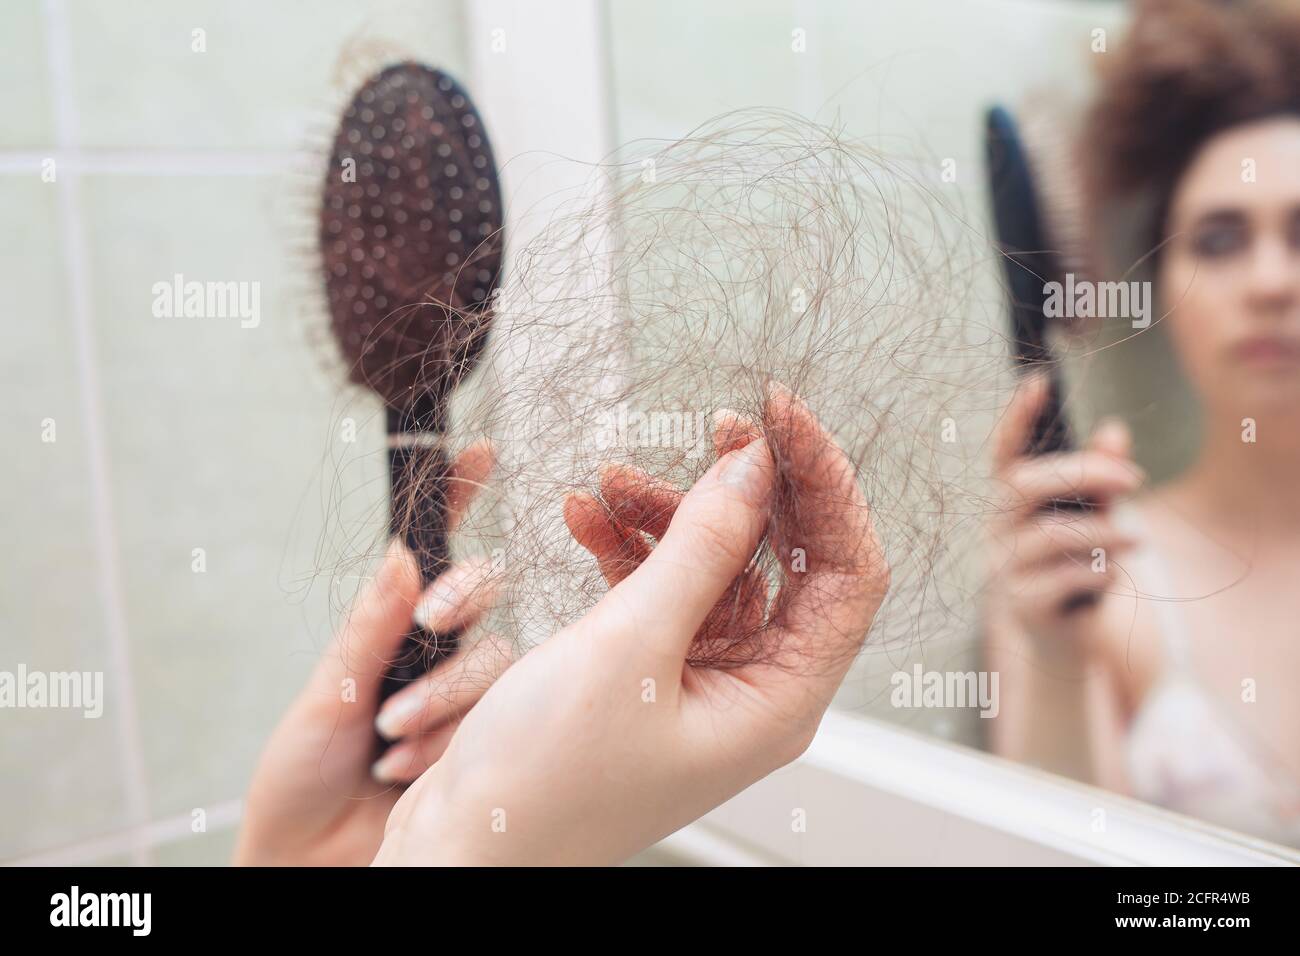 Eine Frau zieht ein paar Haare aus ihrem Kamm. Rückansicht. Im Hintergrund eine Spiegelung im Spiegel. Nahaufnahme der Haarbürste. Das Konzept des Haarausfalls. Stockfoto